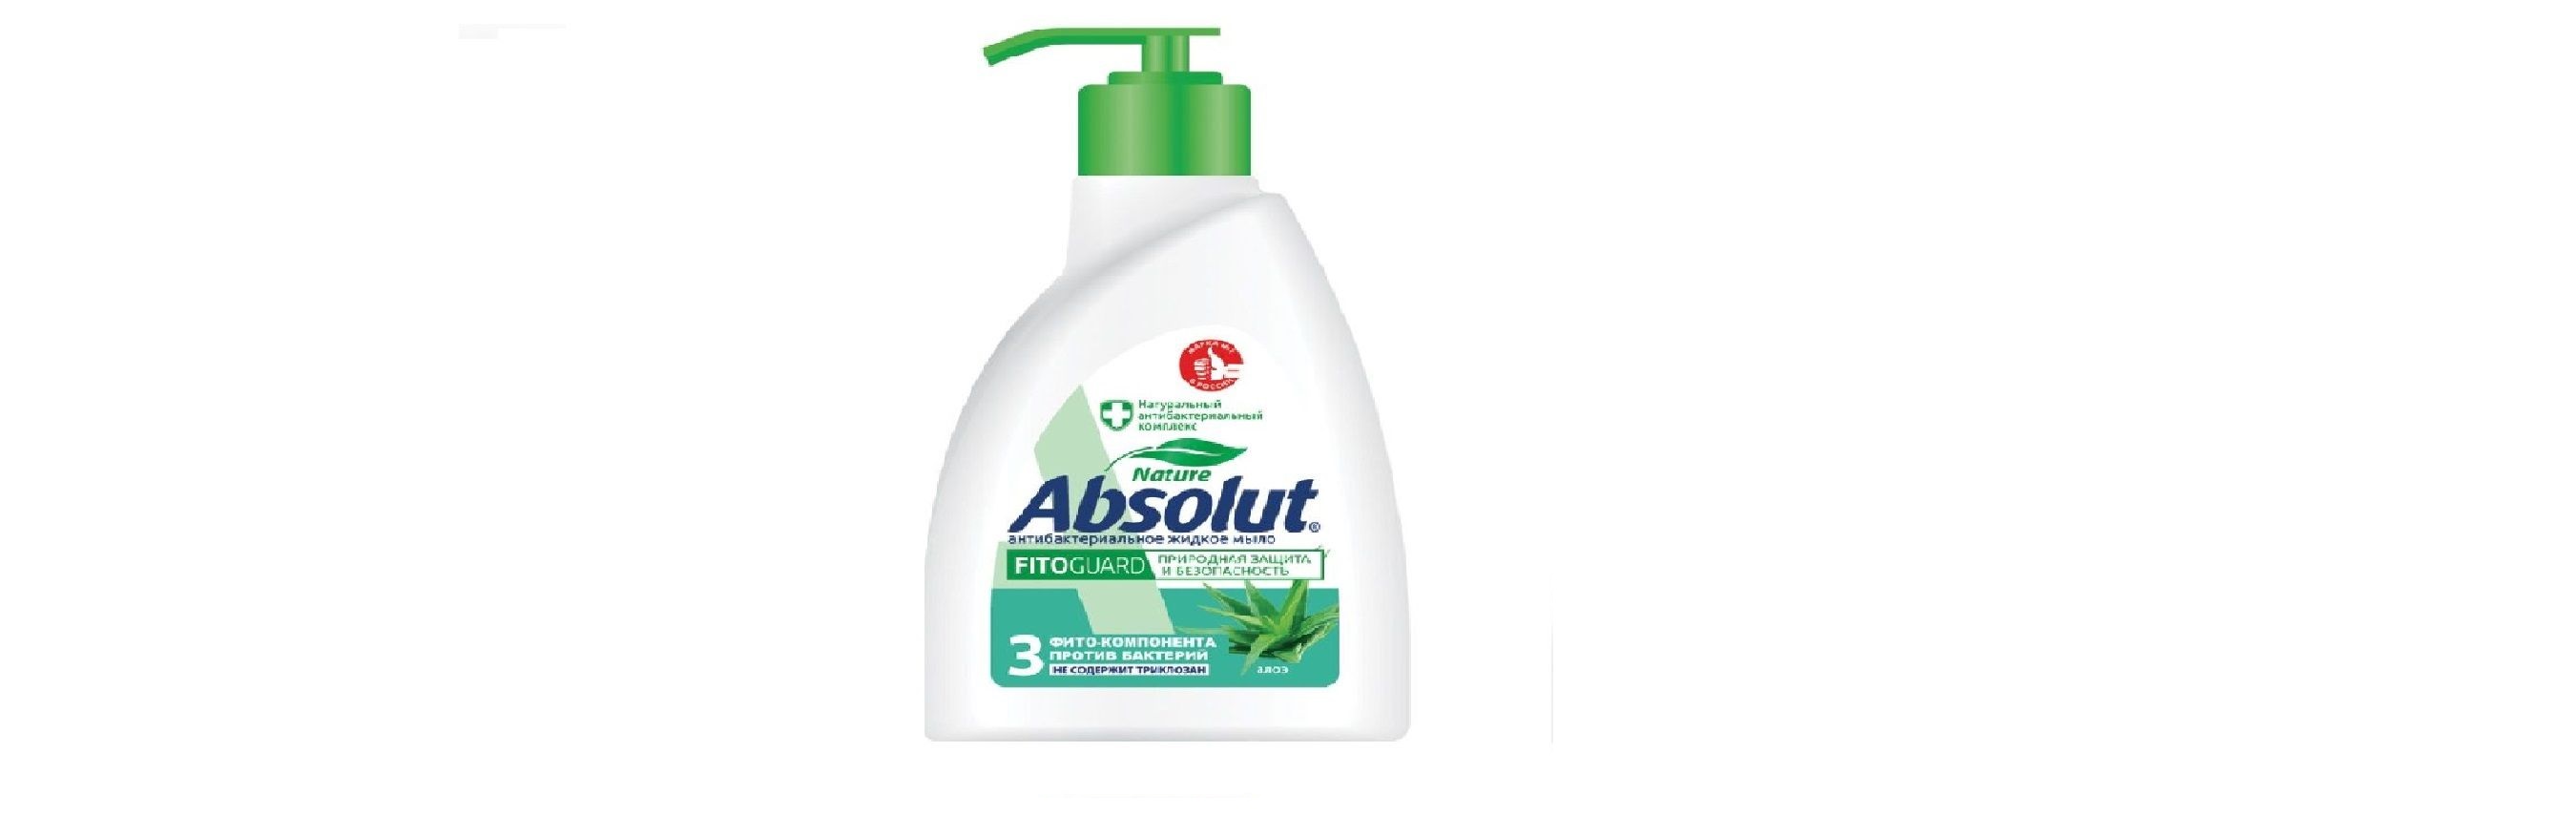 Мыло жидкое Absolut Алоэ Антибактериальное 250 мл 6 штук мыло жидкое absolut ультразащита антибактериальное 250 мл 6 штук